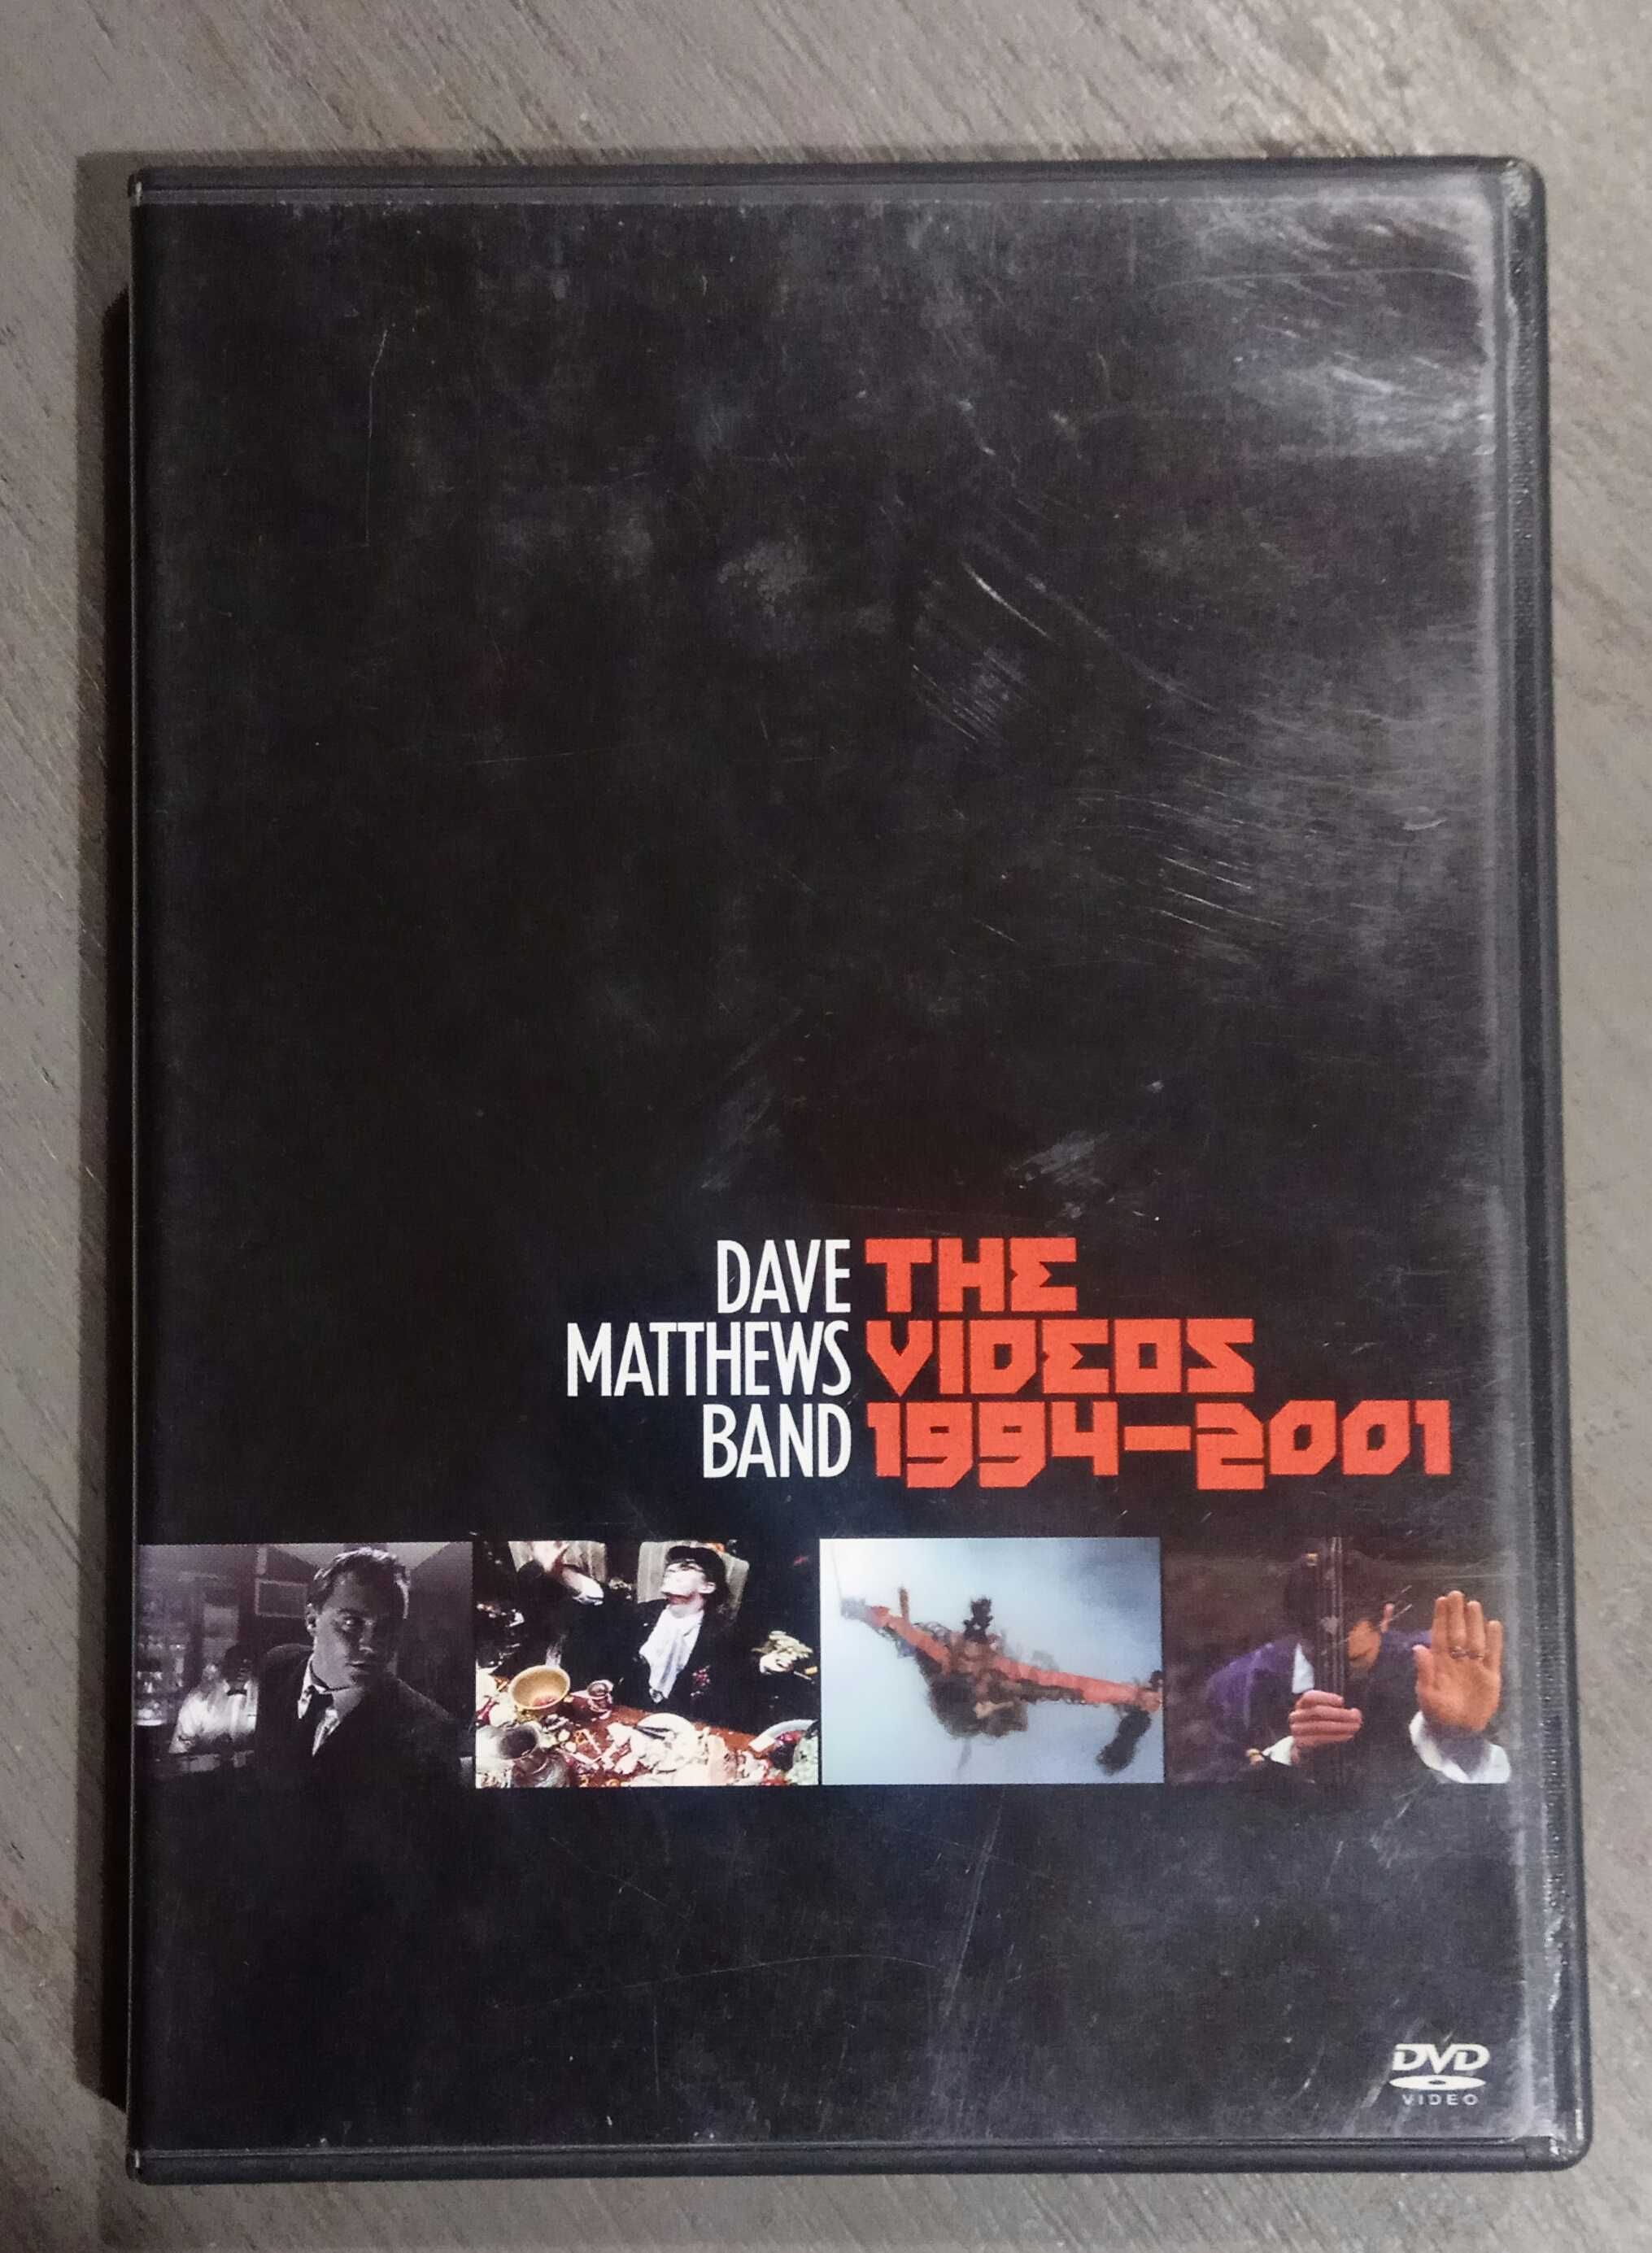 Dave Matthews Band DVD The Videos 1994 do 2001